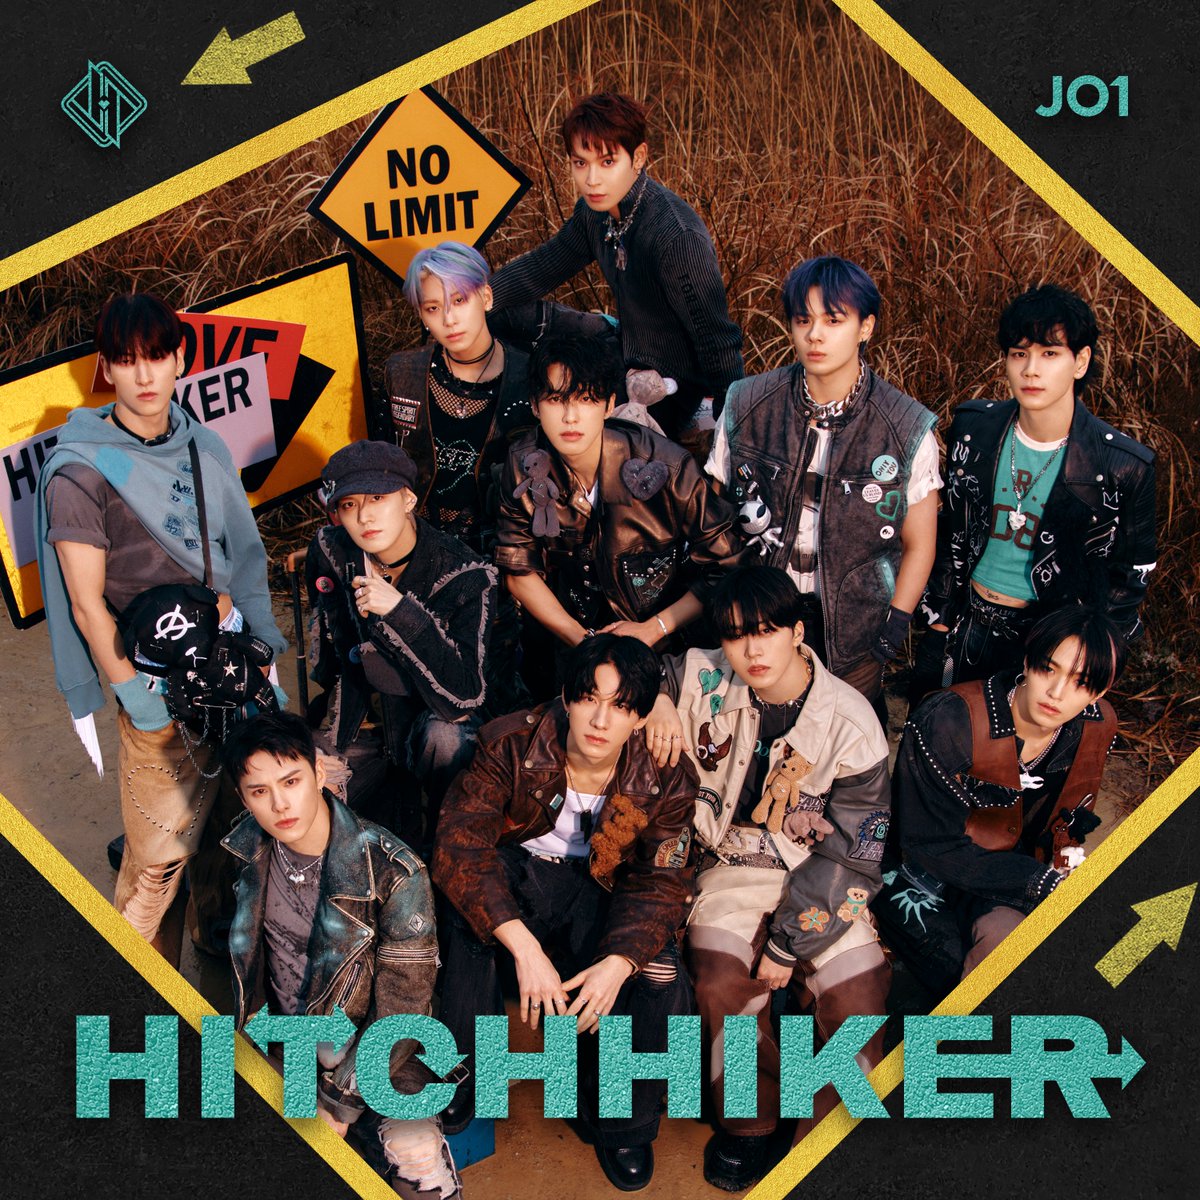 「J-POPシングル ウィークリーTOP30」発表、JO1『HITCHHIKER』が予約1位を獲得！

tower.jp/article/news/2…

#JO1
#HITCHHIKER
#JO1_HITCHHIKER
#タワレコオンラインニュース